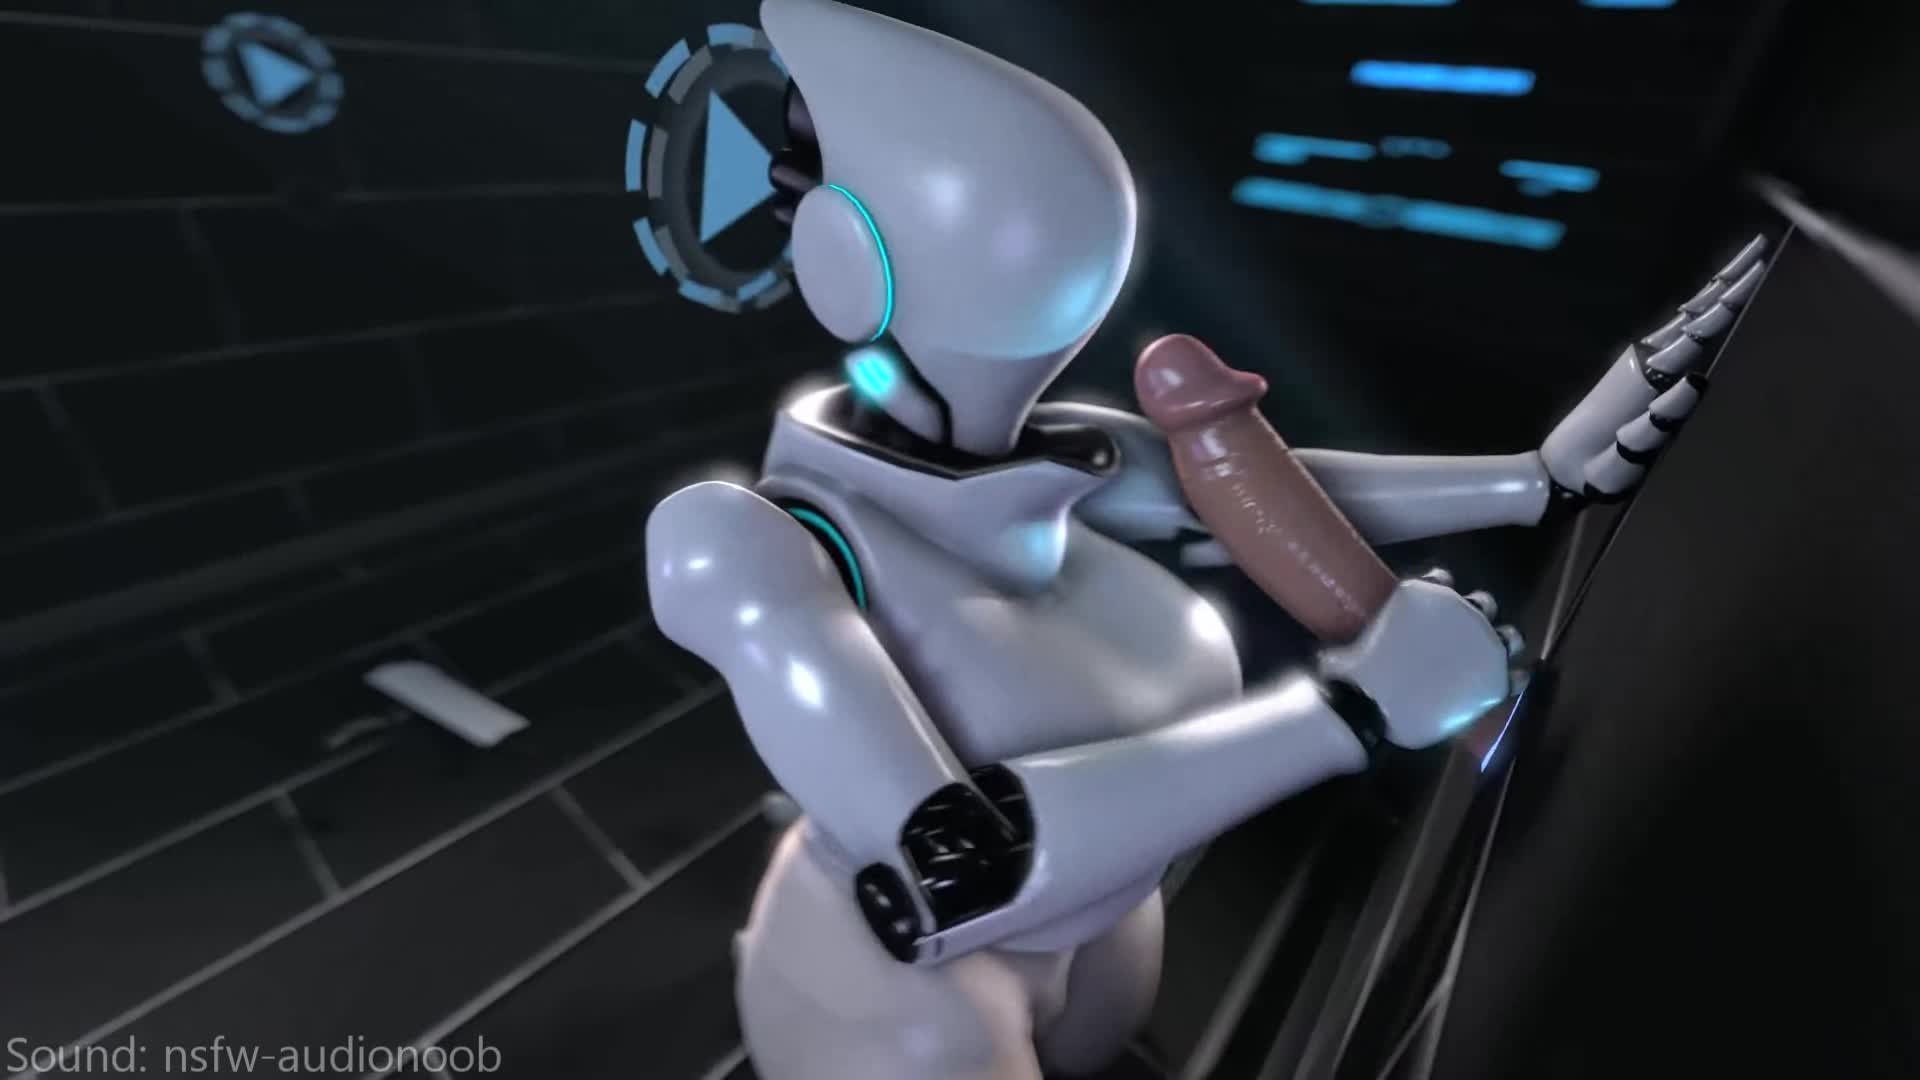 Alien Sex Porn Robot Sex Doll Robot Sex Machine Robot Sex Aim Robot Sex